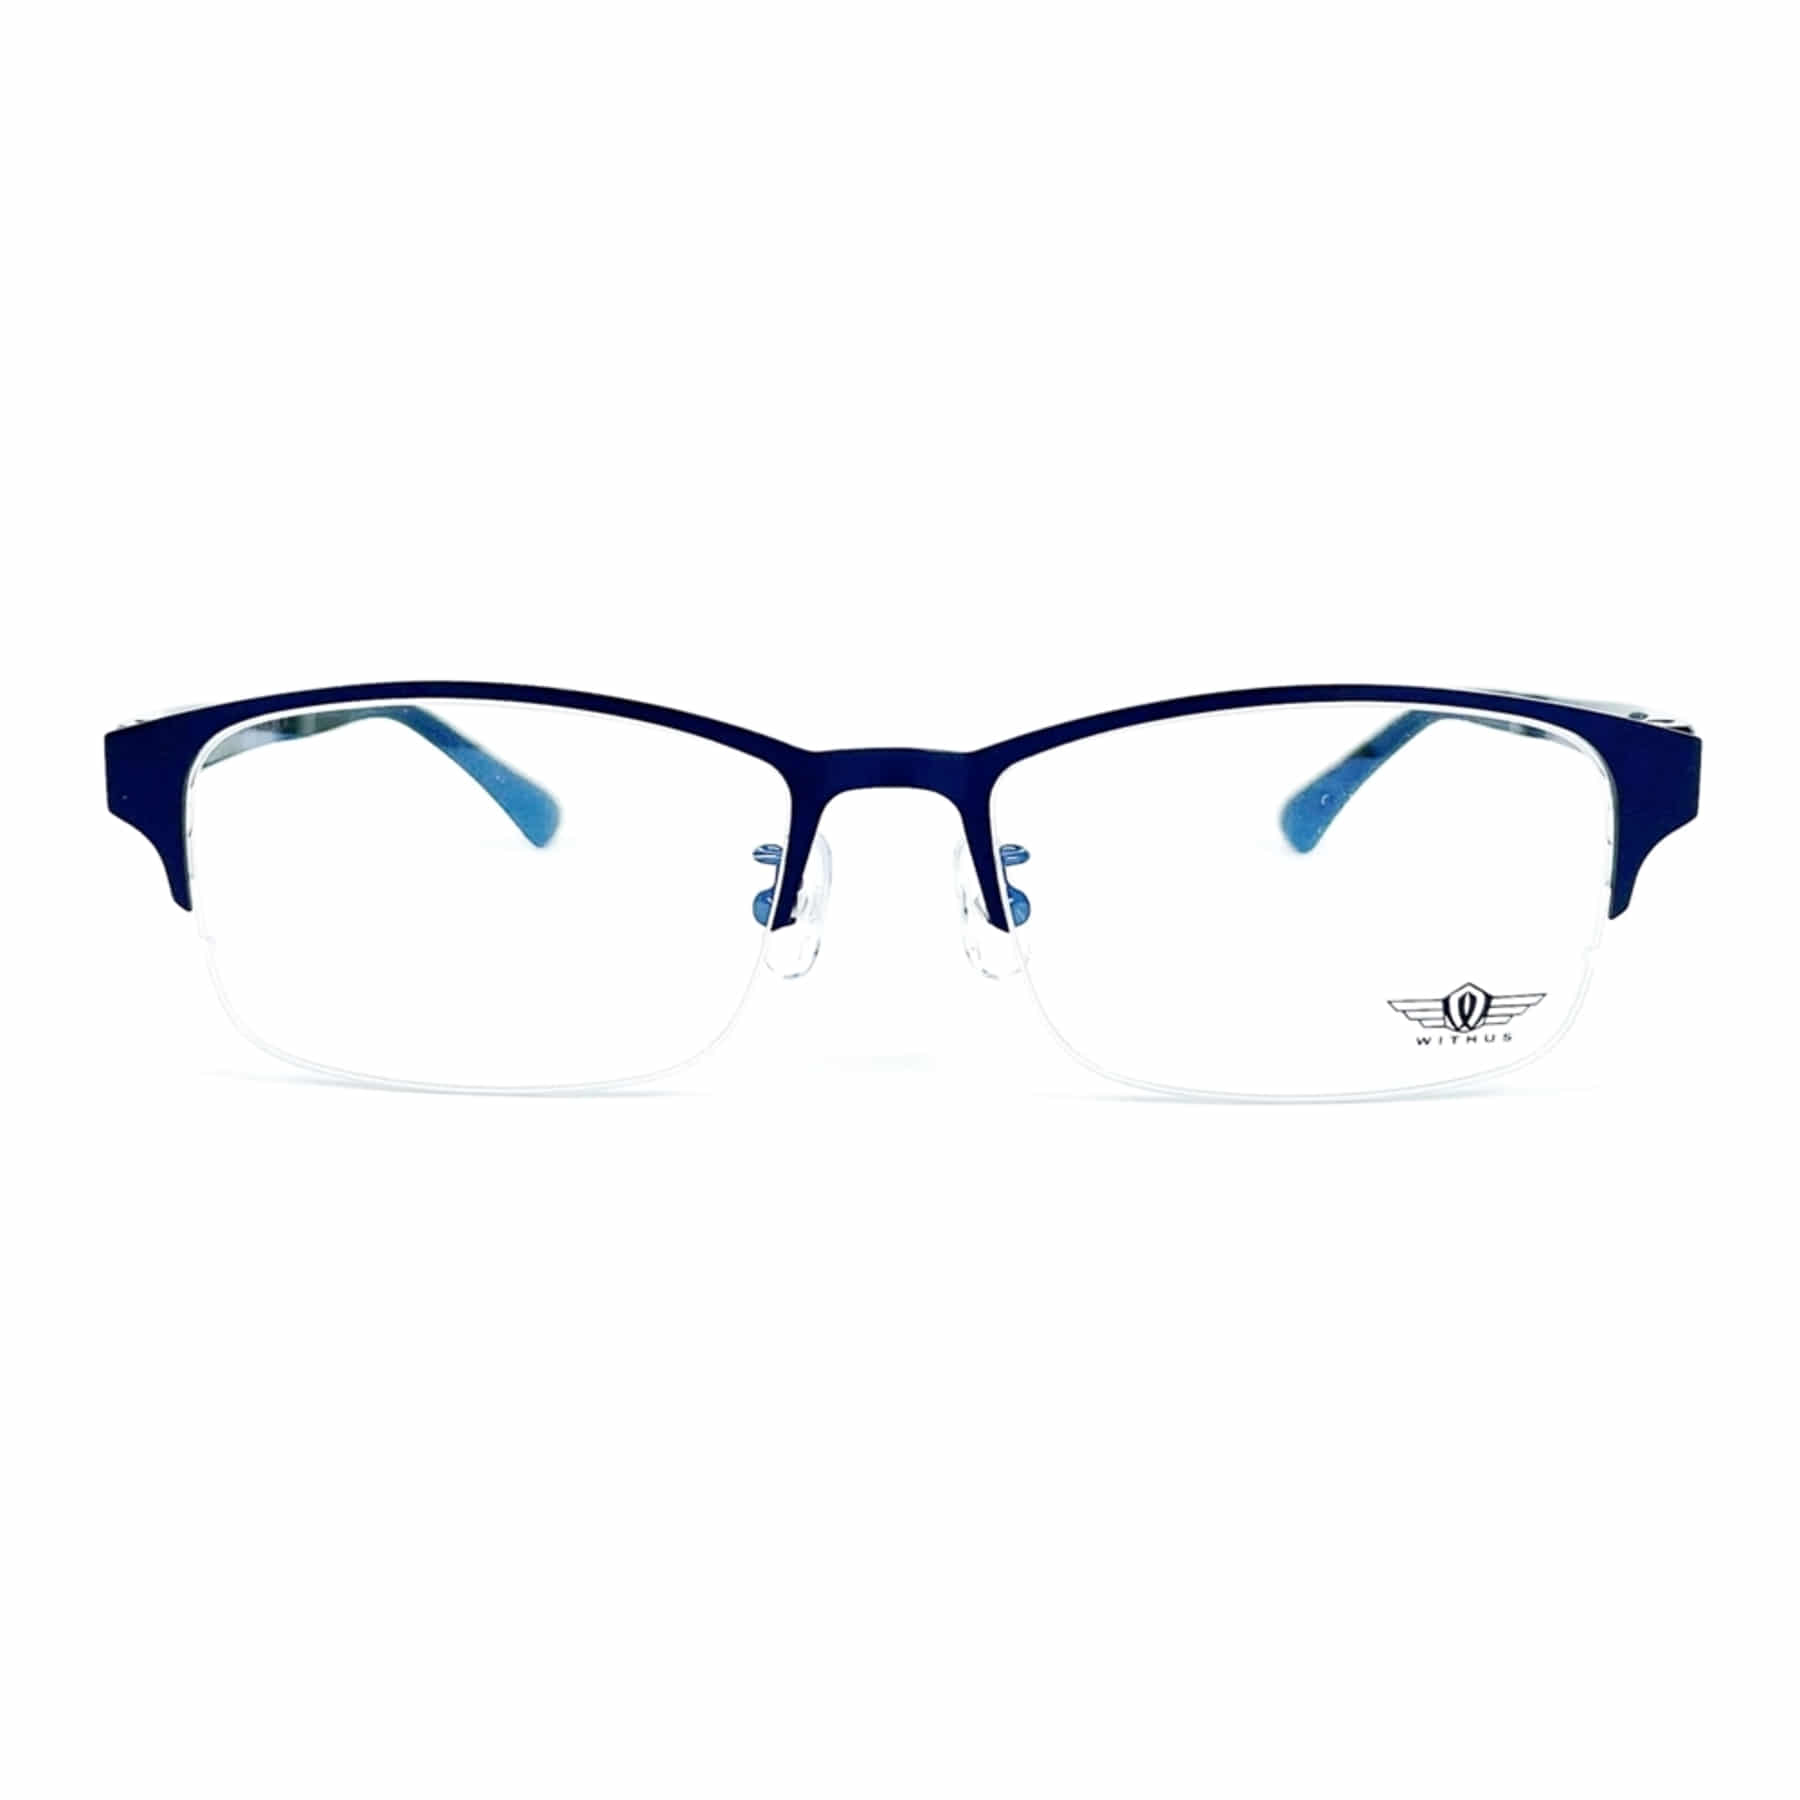 WITHUS-7373, Korean glasses, sunglasses, eyeglasses, glasses